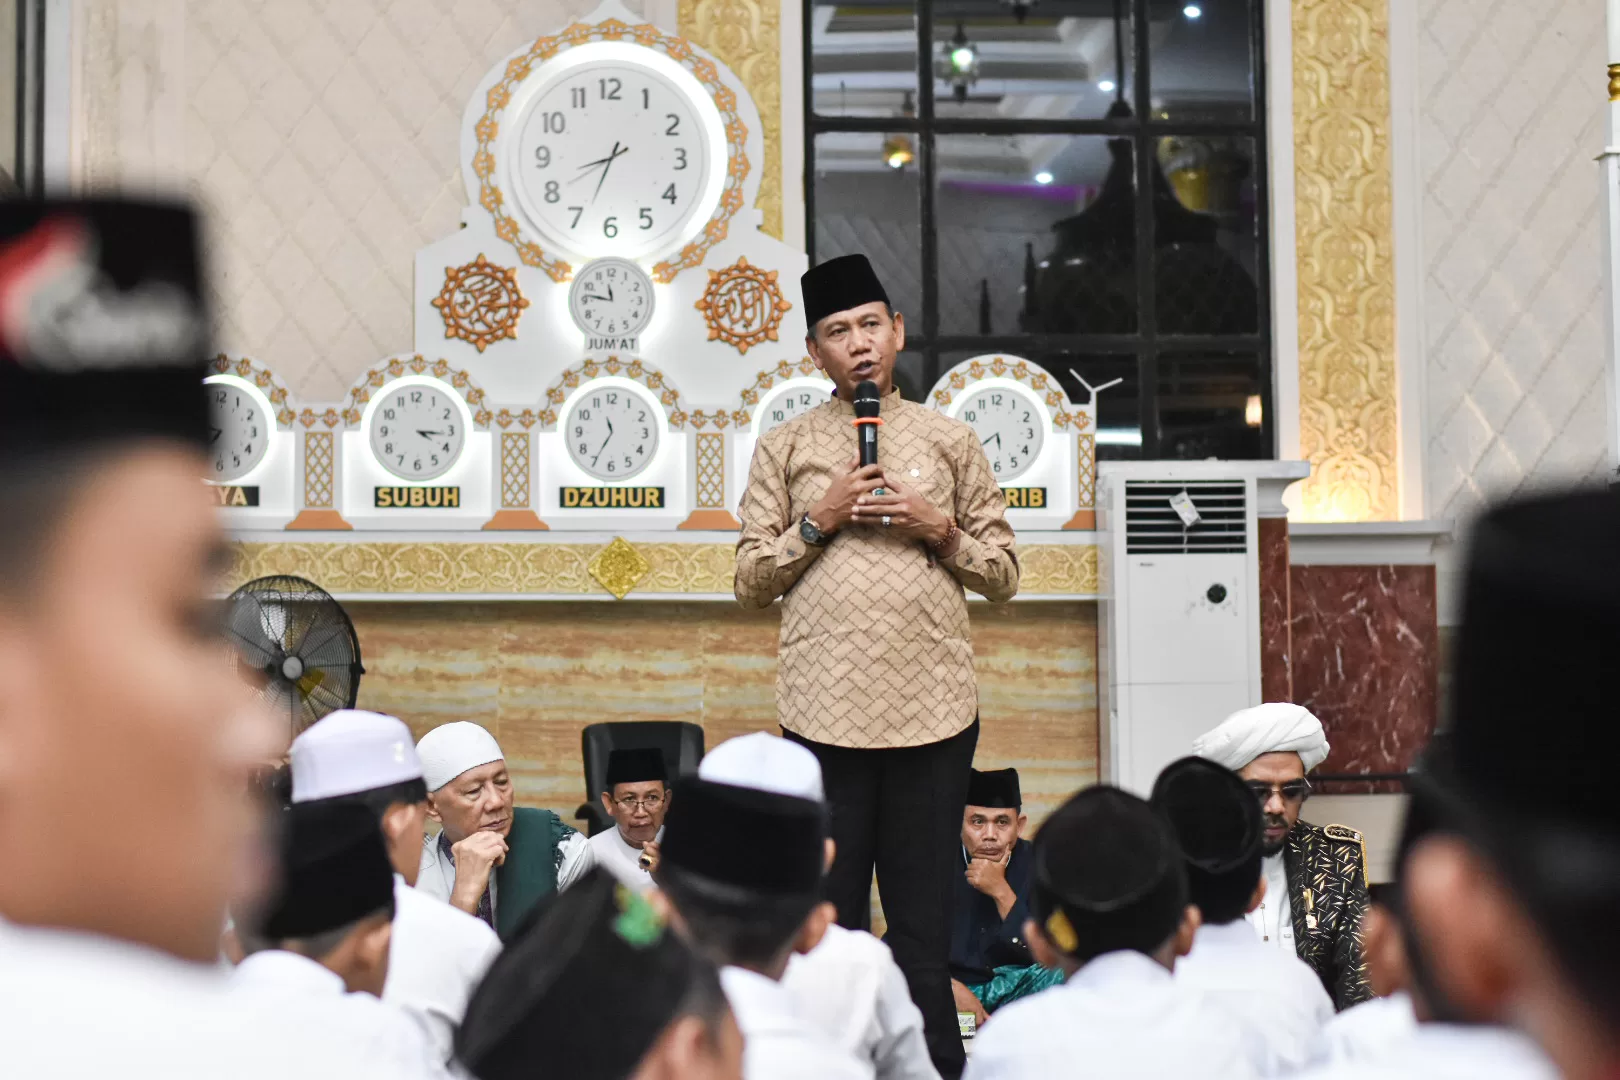 Sambut Maulid Nabi, Pengurus Masjid Agung Al-Ikhla Ketapang adakan Tabligh Akbar